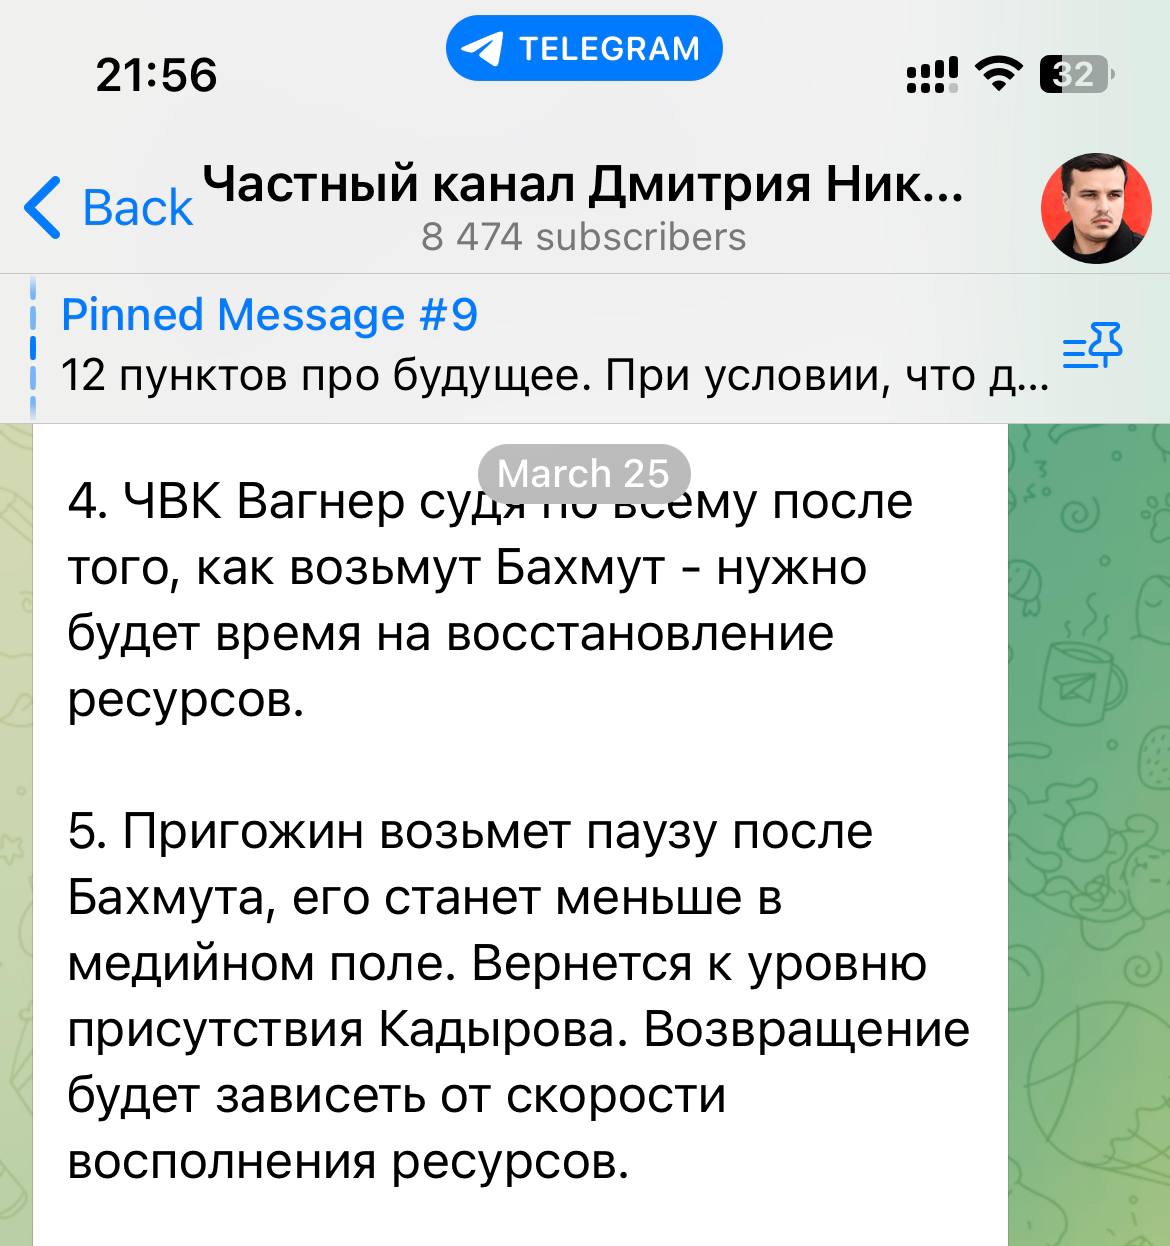 Дмитрий никотин телеграмм последнее видео смотреть бесплатно без регистрации в хорошем качестве фото 54